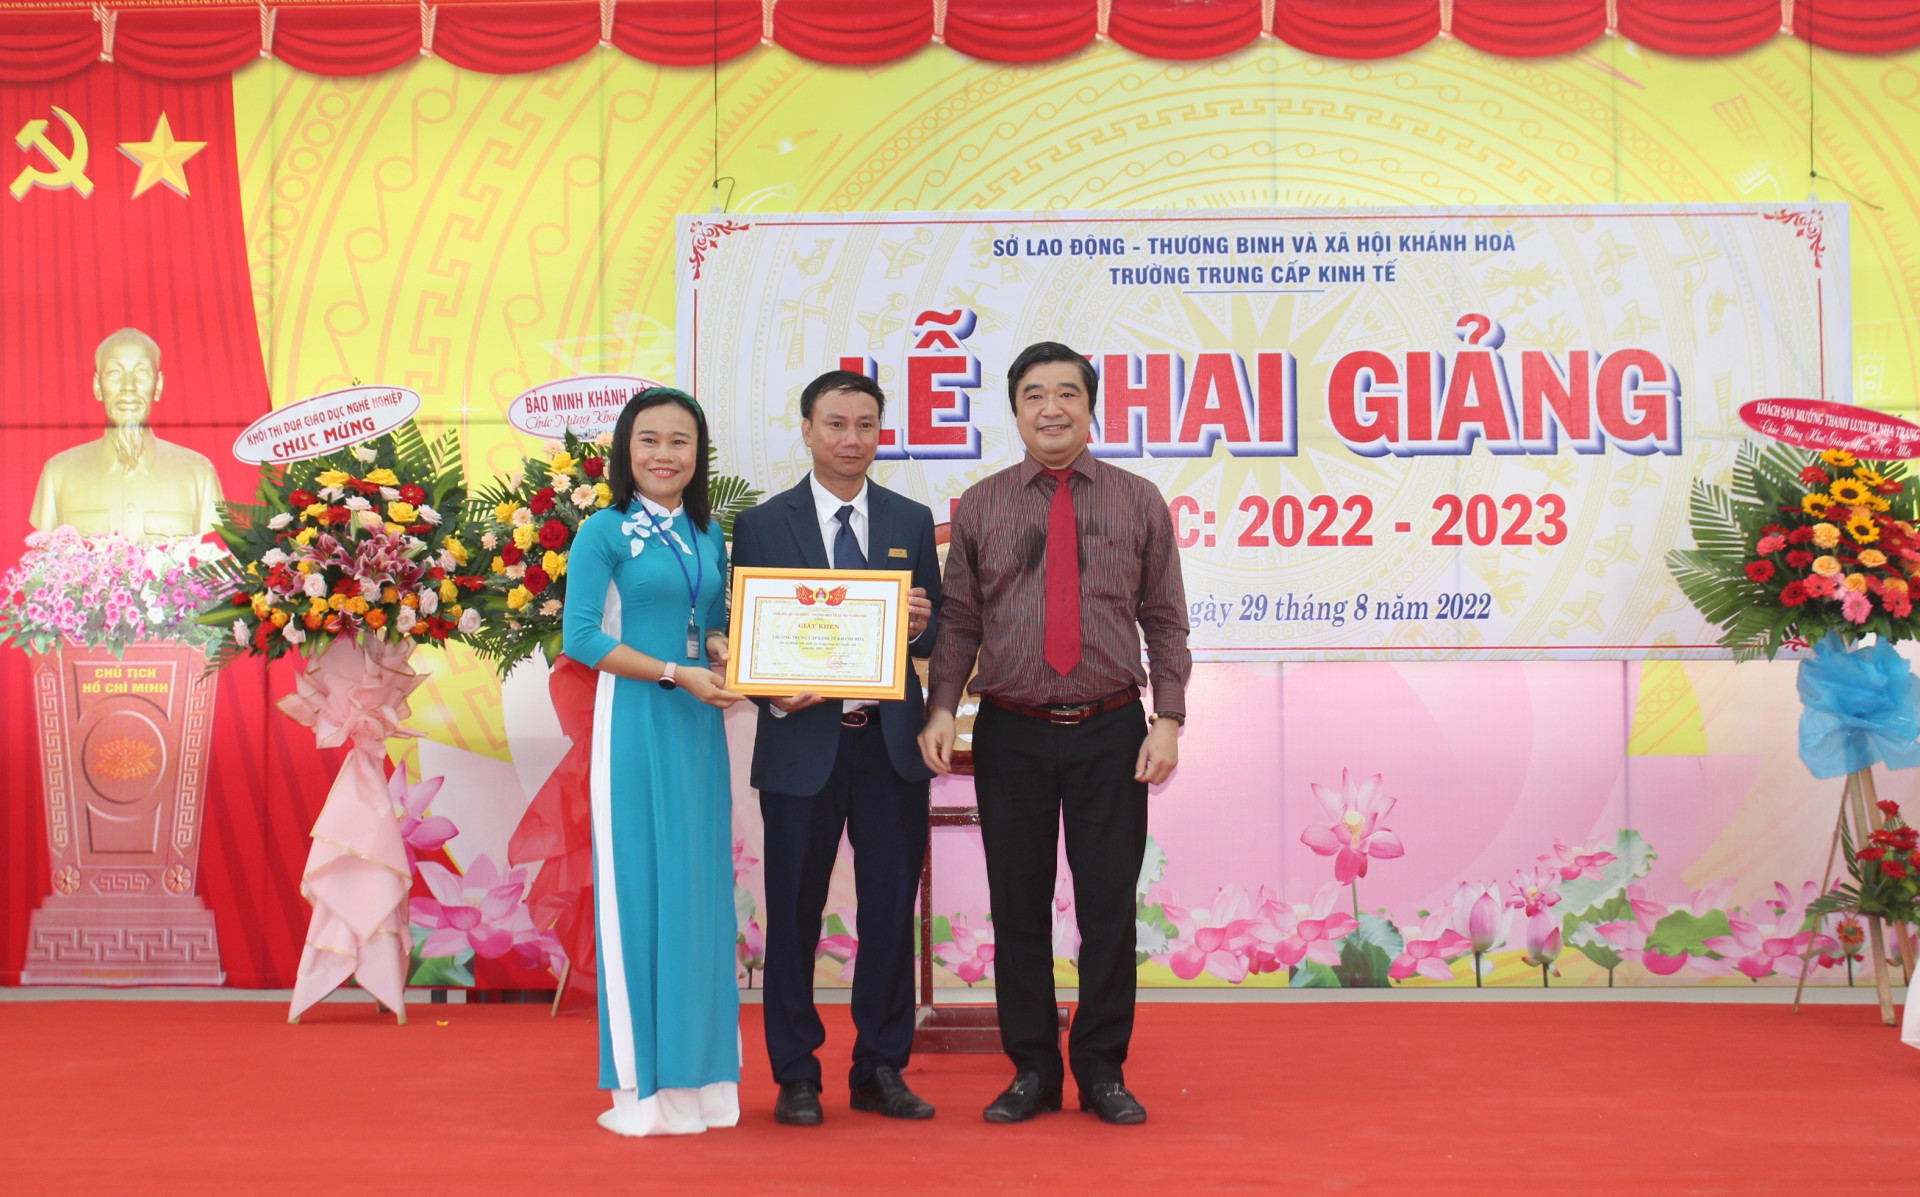 Lãnh đạo Sở Lao động - Thương binh và Xã hội trao giấy khen cho Trường Trung cấp Kinh tế Khánh Hòa.